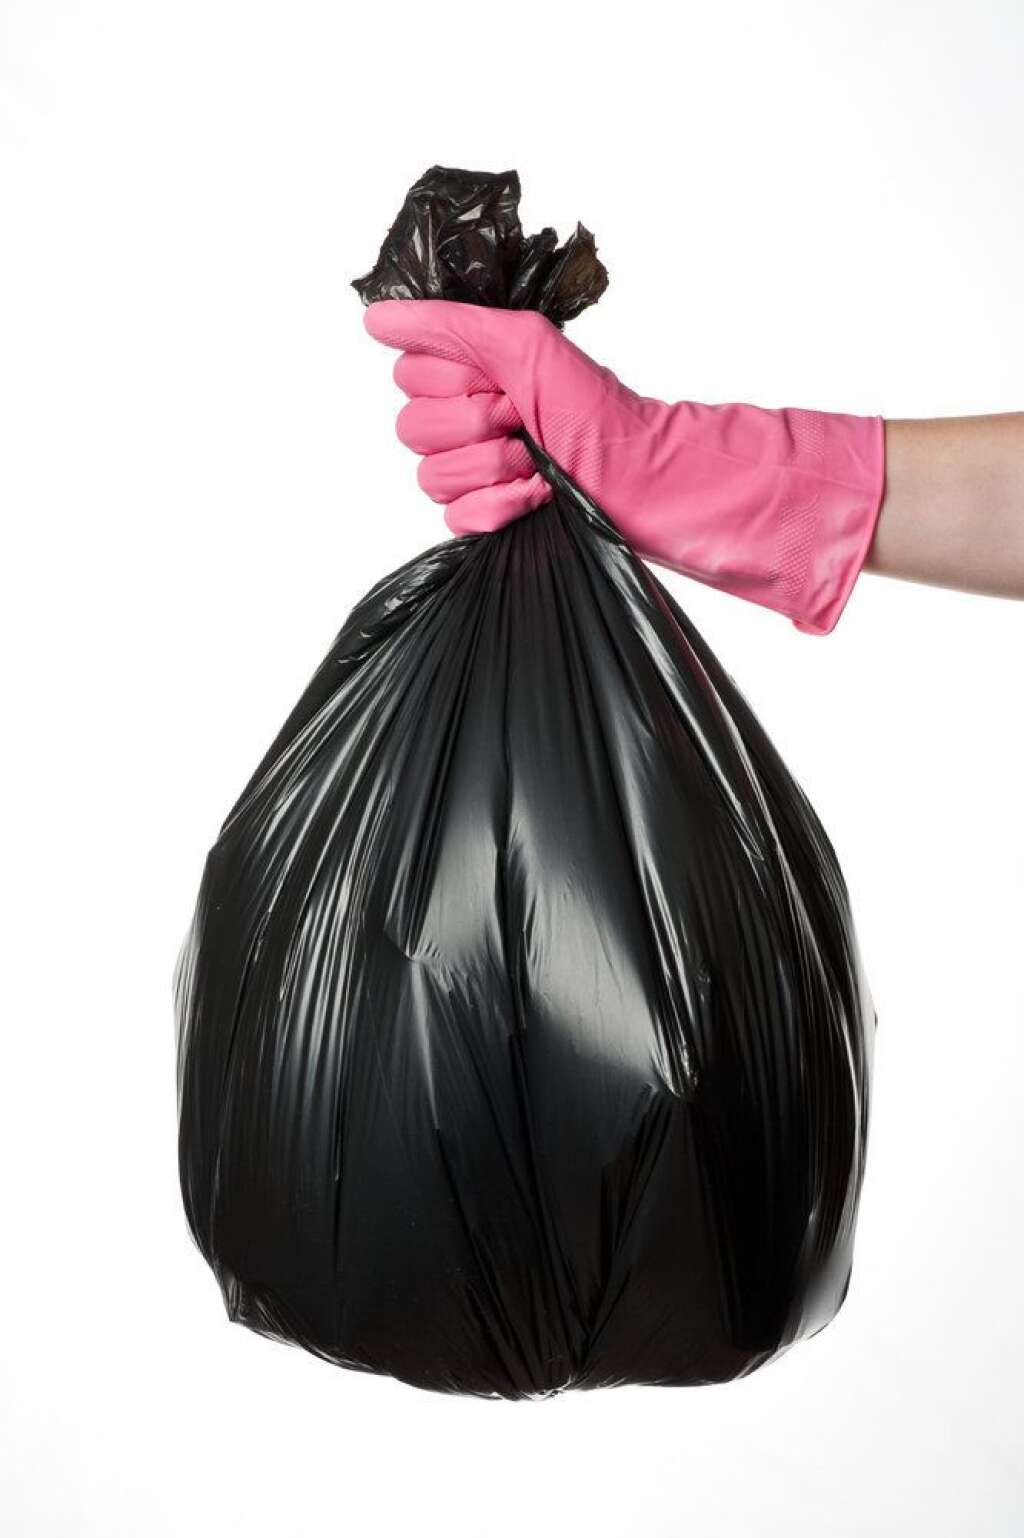 À NE PAS jeter dans le bac à couvercle jaune... - Les sacs en plastique ne sont pas recyclables. Ils sont à jeter dans la poubelle verte. Si vous avez des déchets recyclables dedans, il faut faire le tri.